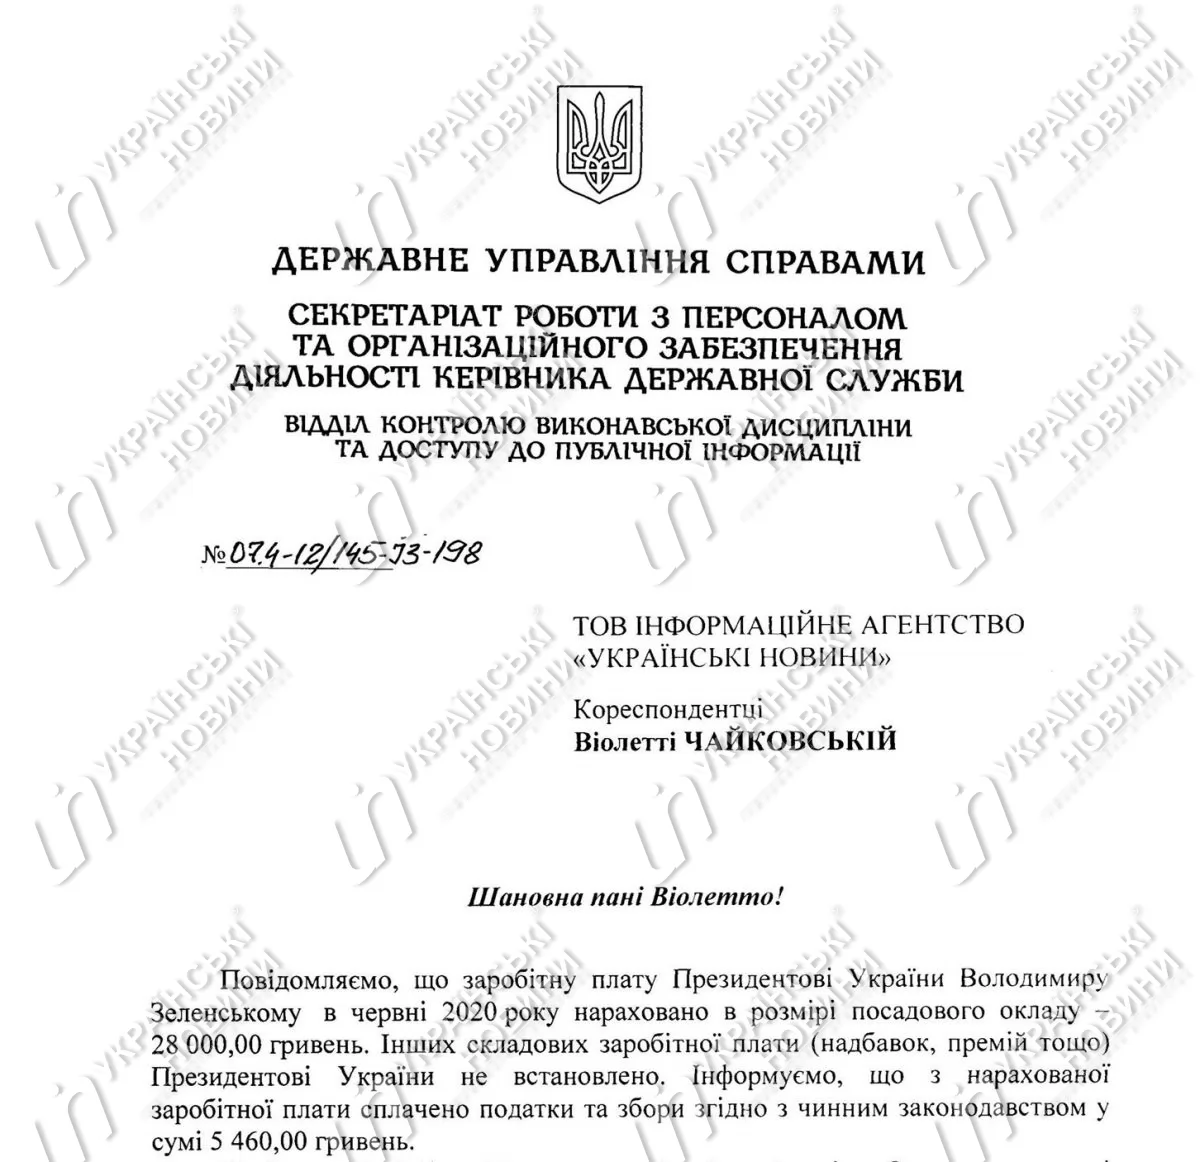 За прошлый месяц Зеленский заработал 28 тысяч гривен. Документ: Украинские Новости